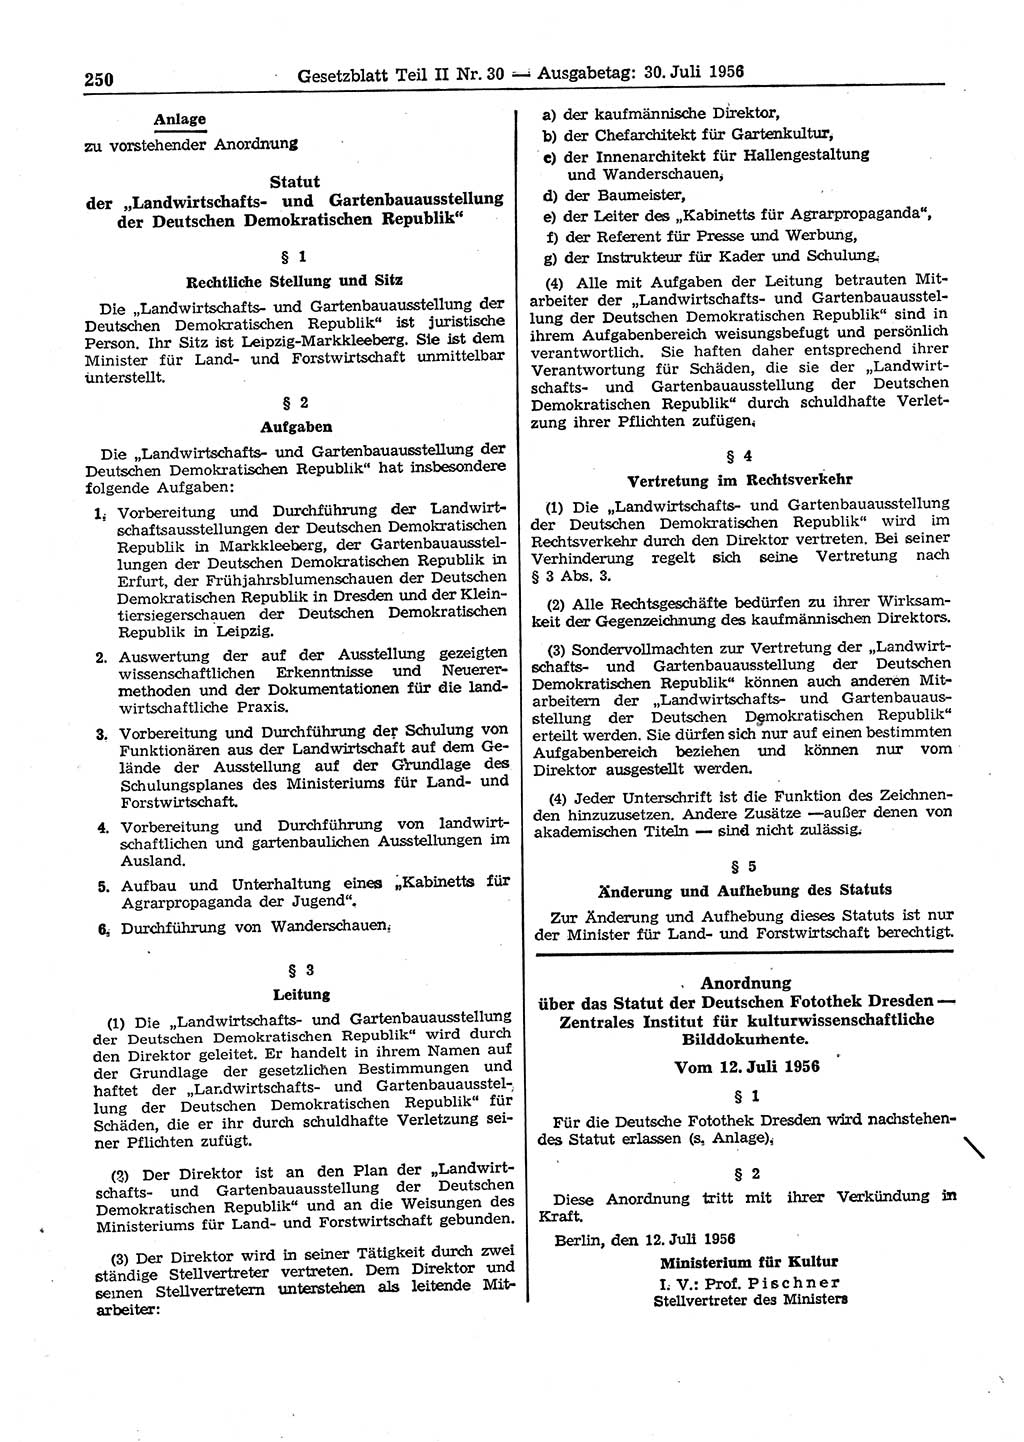 Gesetzblatt (GBl.) der Deutschen Demokratischen Republik (DDR) Teil ⅠⅠ 1956, Seite 250 (GBl. DDR ⅠⅠ 1956, S. 250)